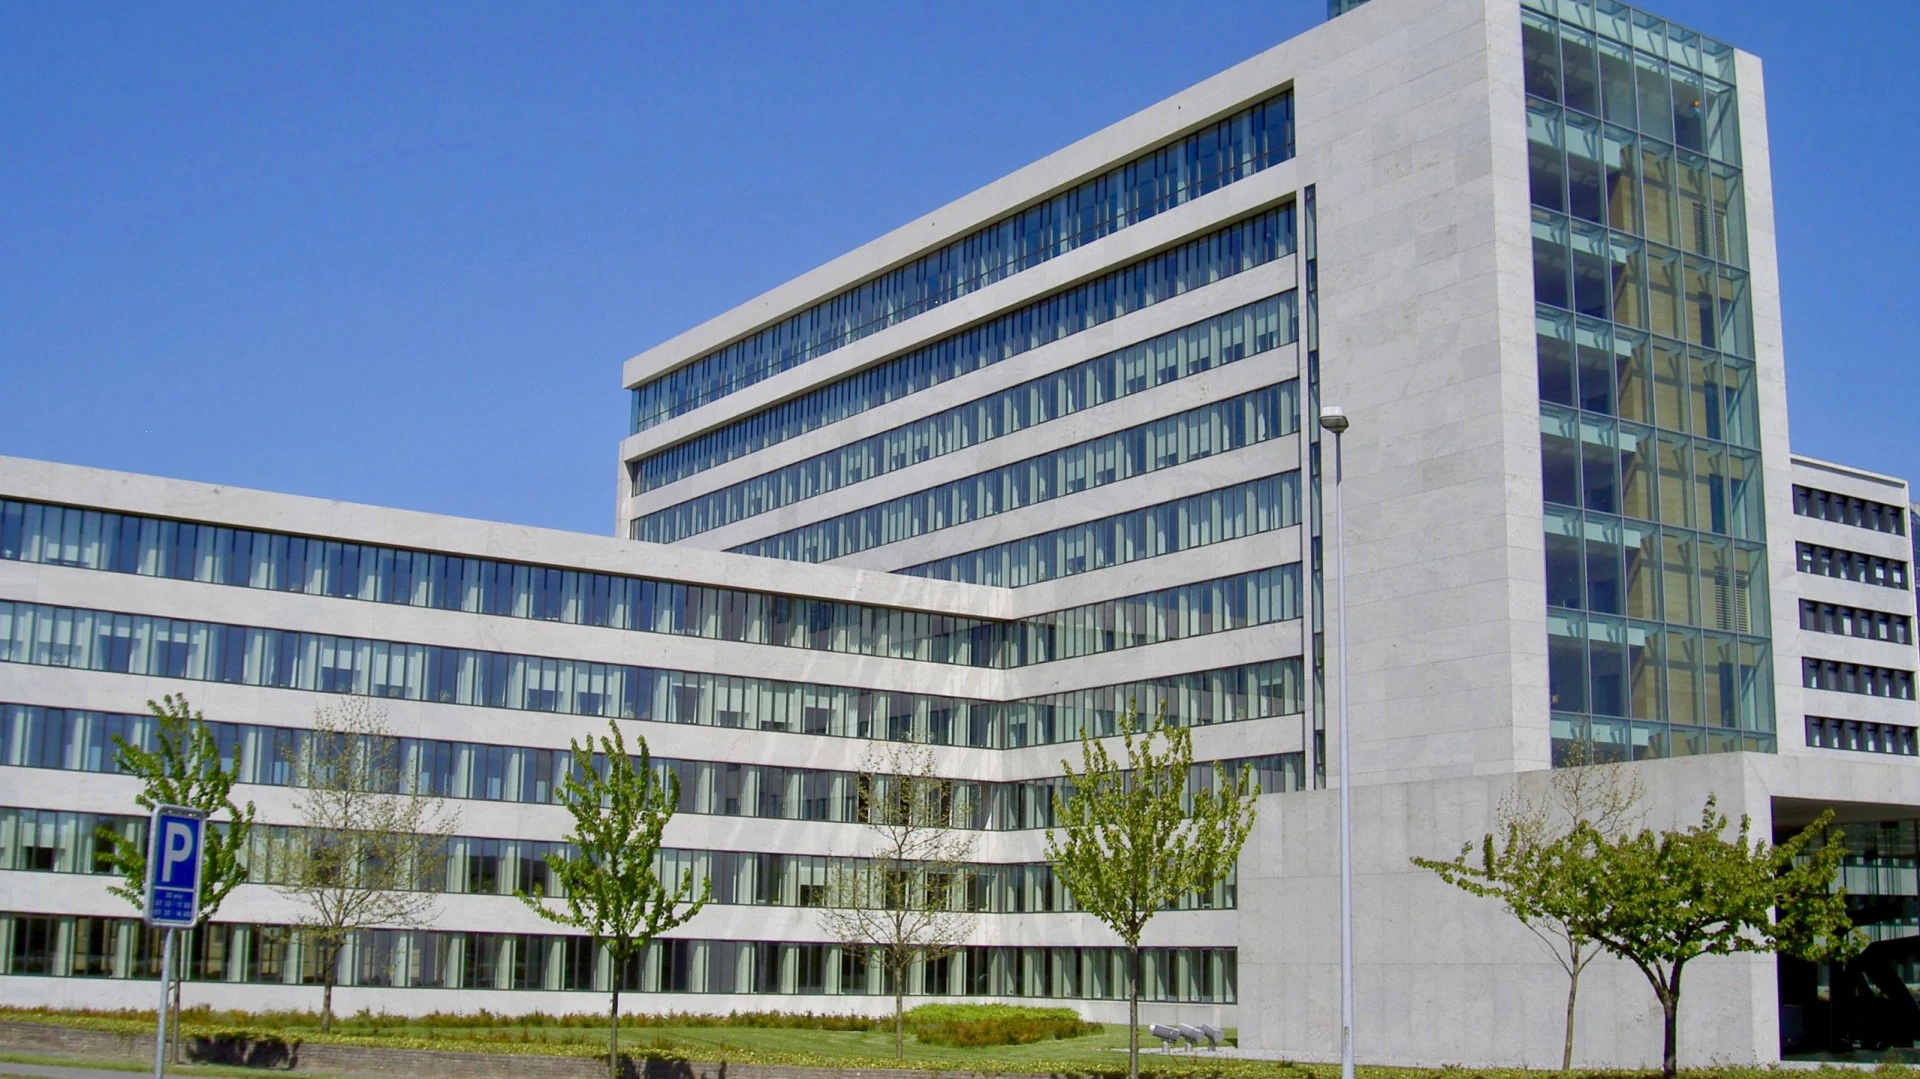 Danfoss Hauptsitz, Nordborg, Dänemark. Die Danfoss-Gruppe wollte die Vorstellungen des Managements zur Digitalisierung des Kühlsegments in Einklang bringen.